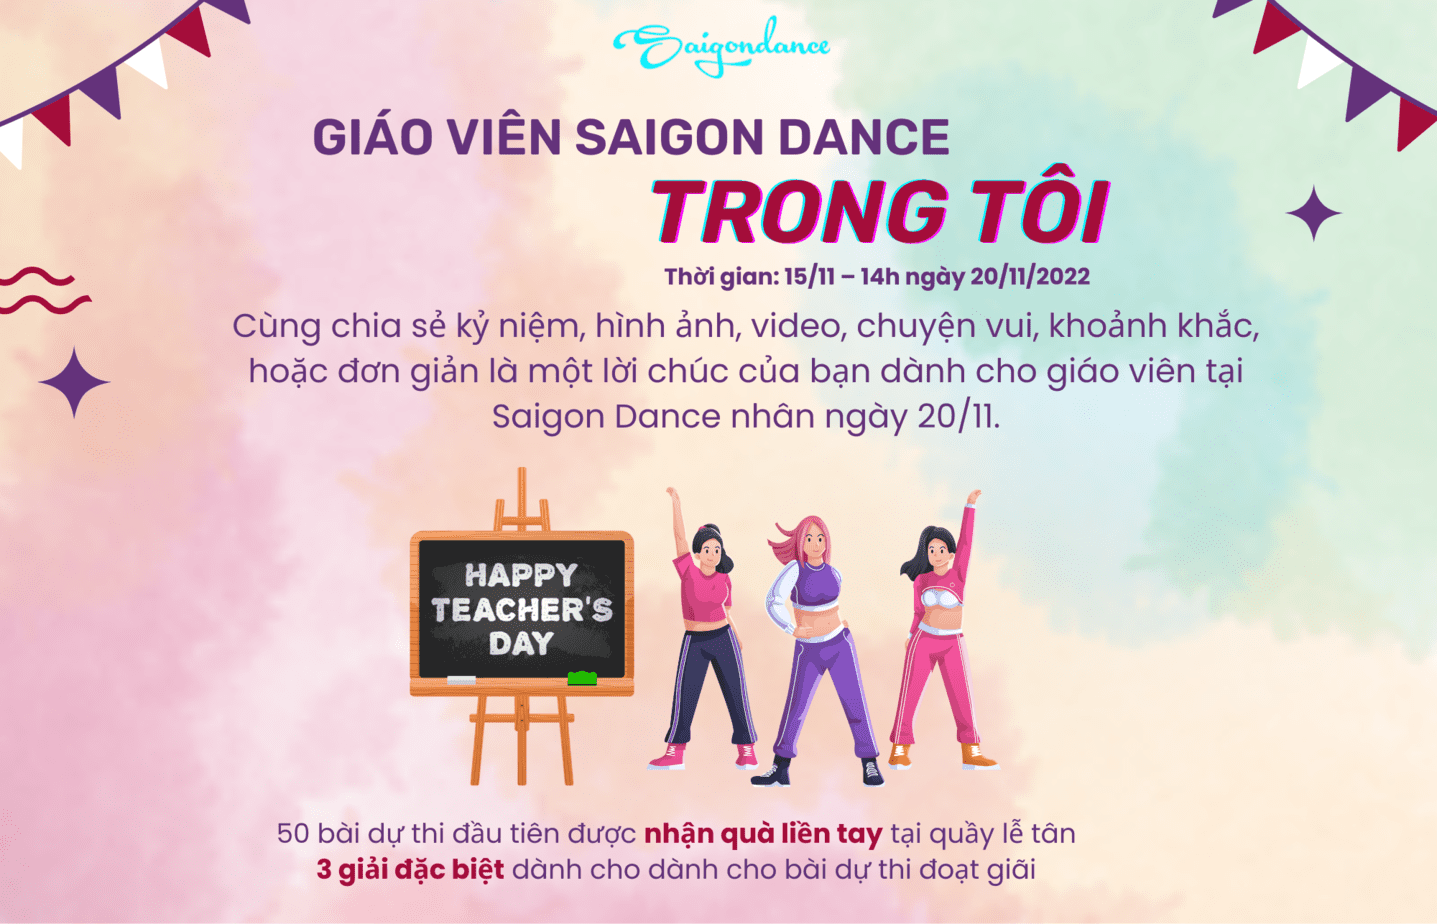 Nhận quà liền tay cùng Cuộc thi "Giáo viên Saigon Dance trong tôi" 1